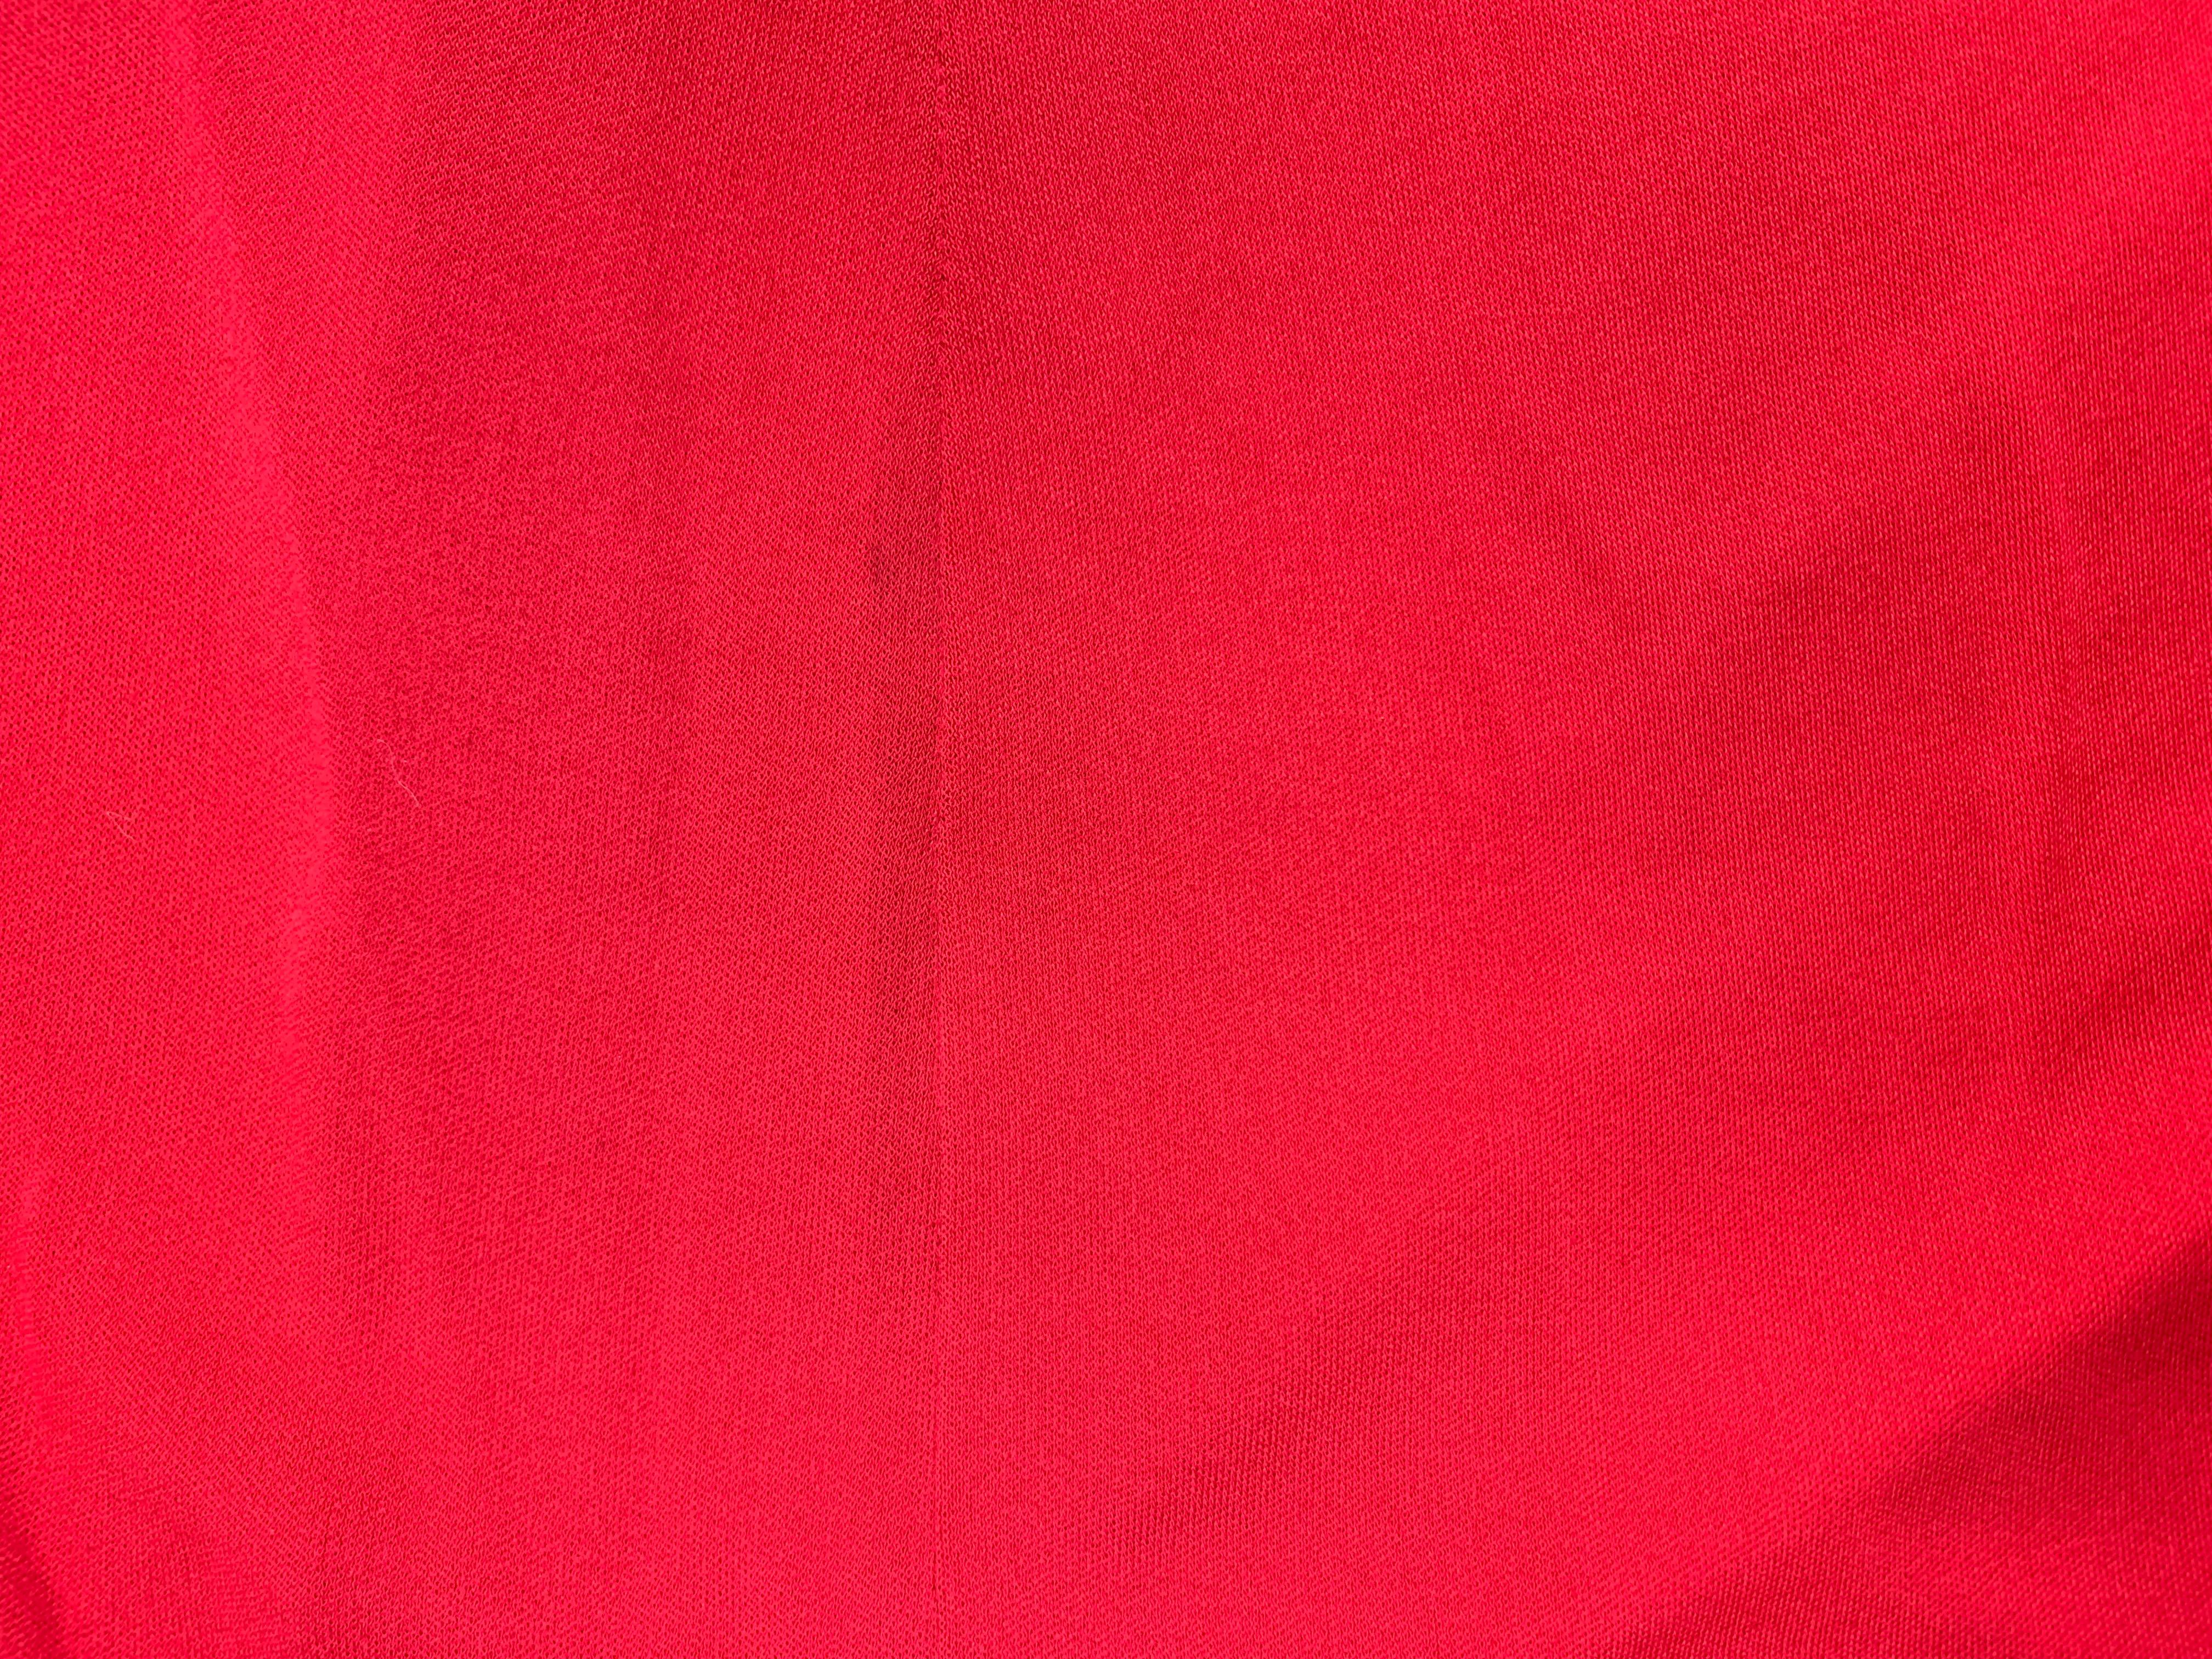 ysl red dress